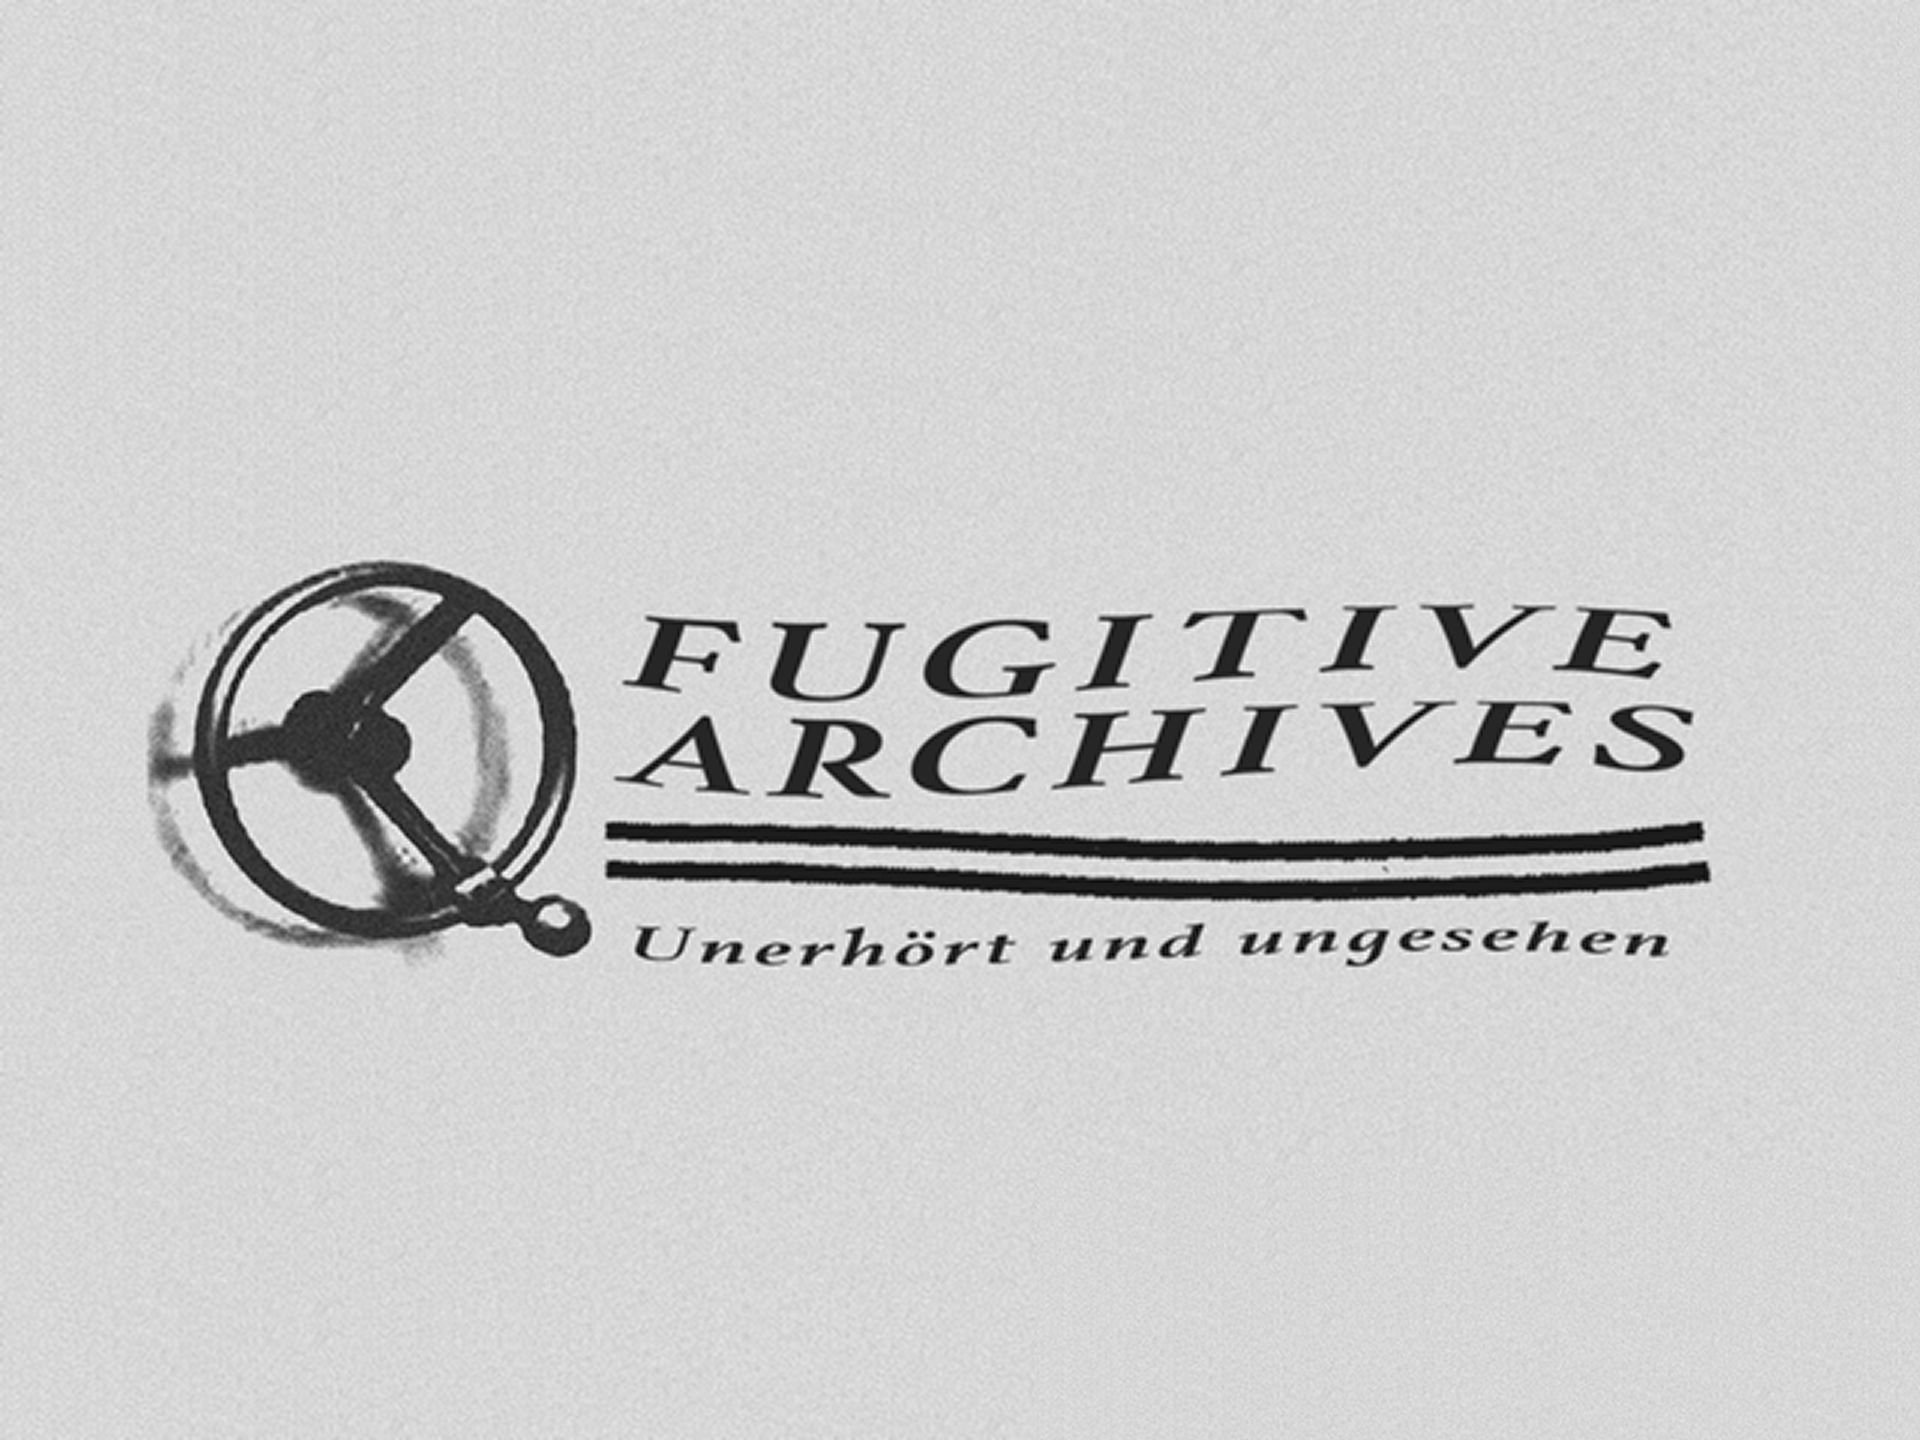 Archives des fugitifs